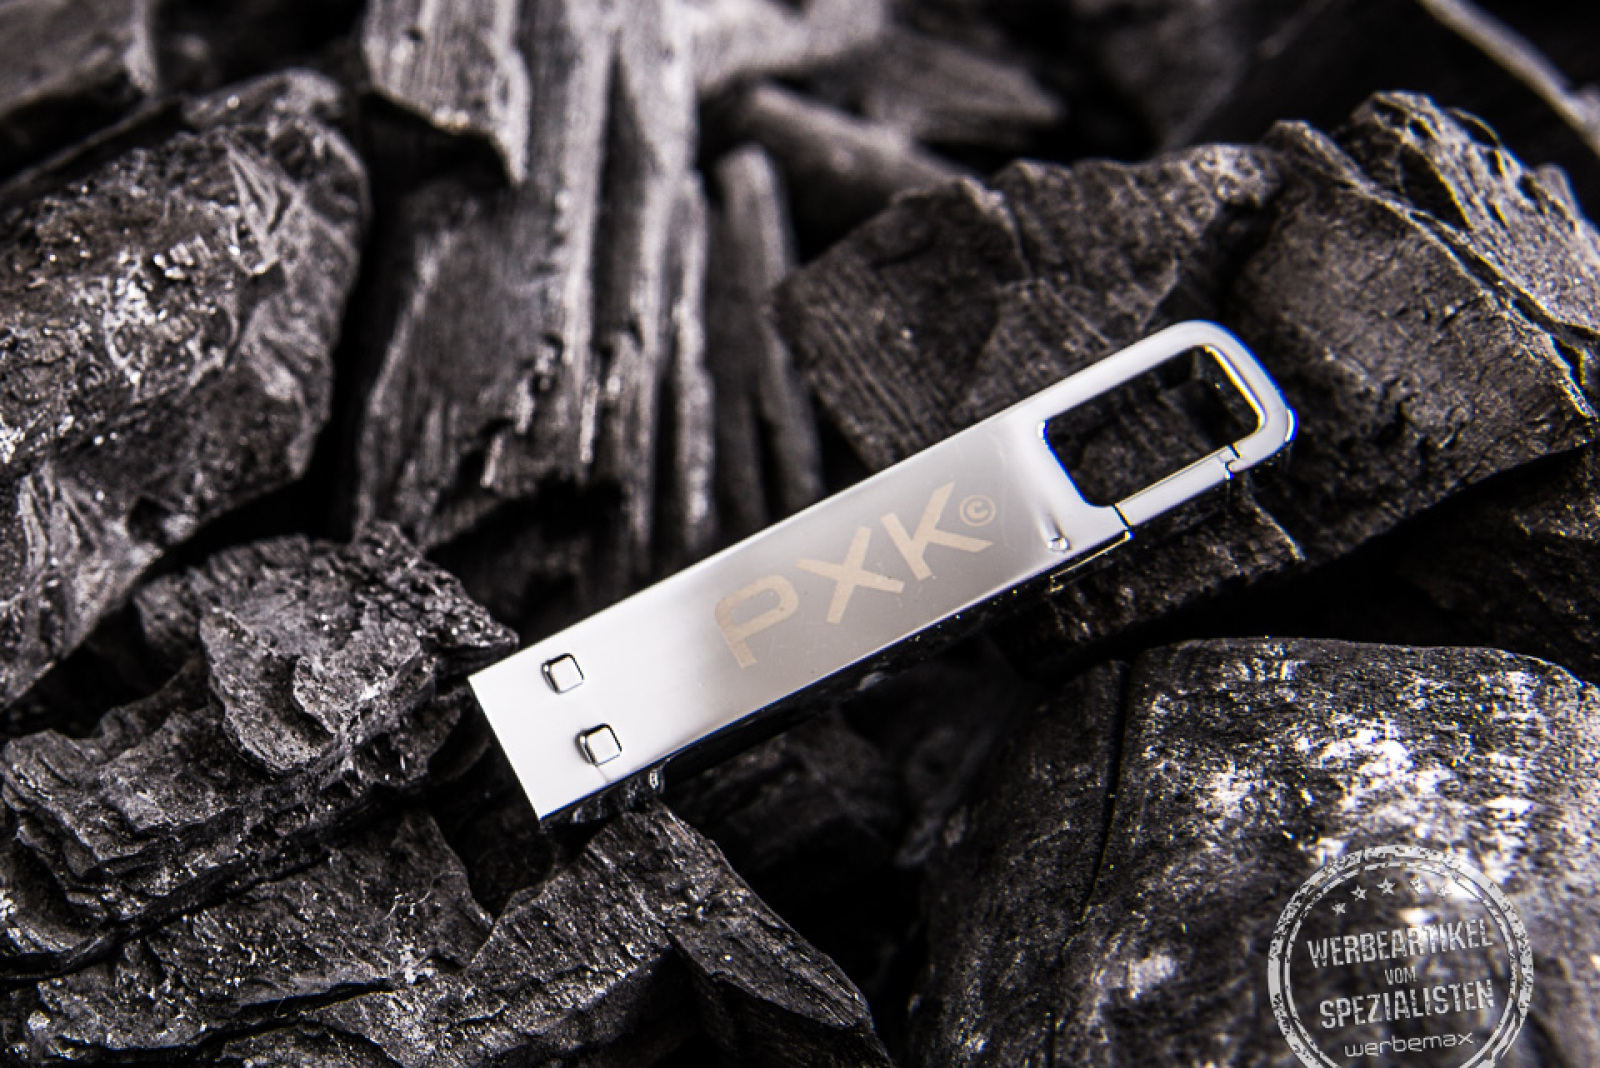 hochwertiger USB Stick mit Lasergravur